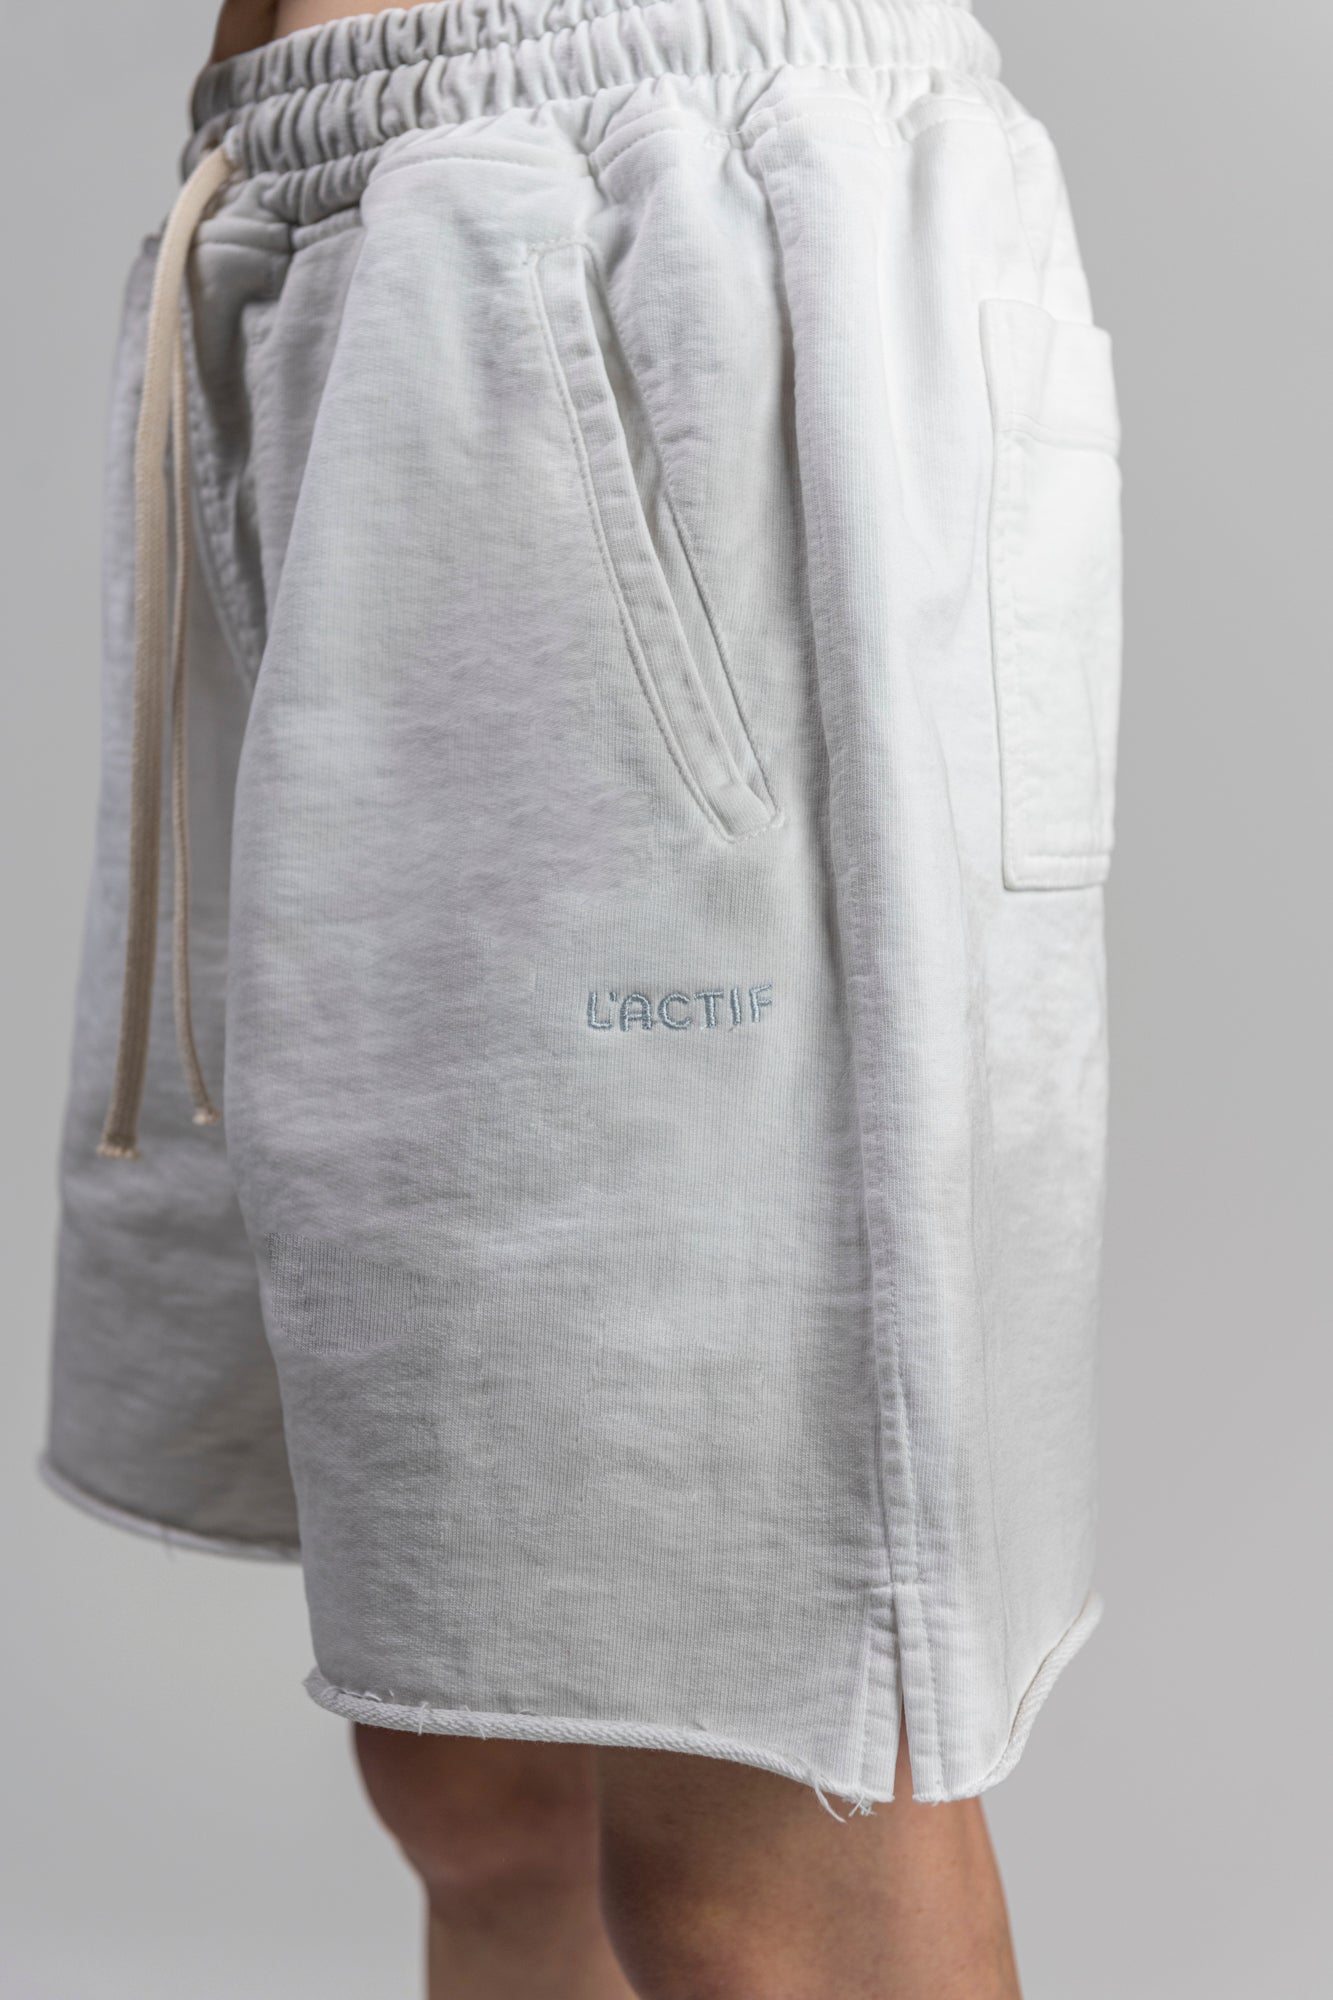 lactif-white-shorts-female-logo-detail